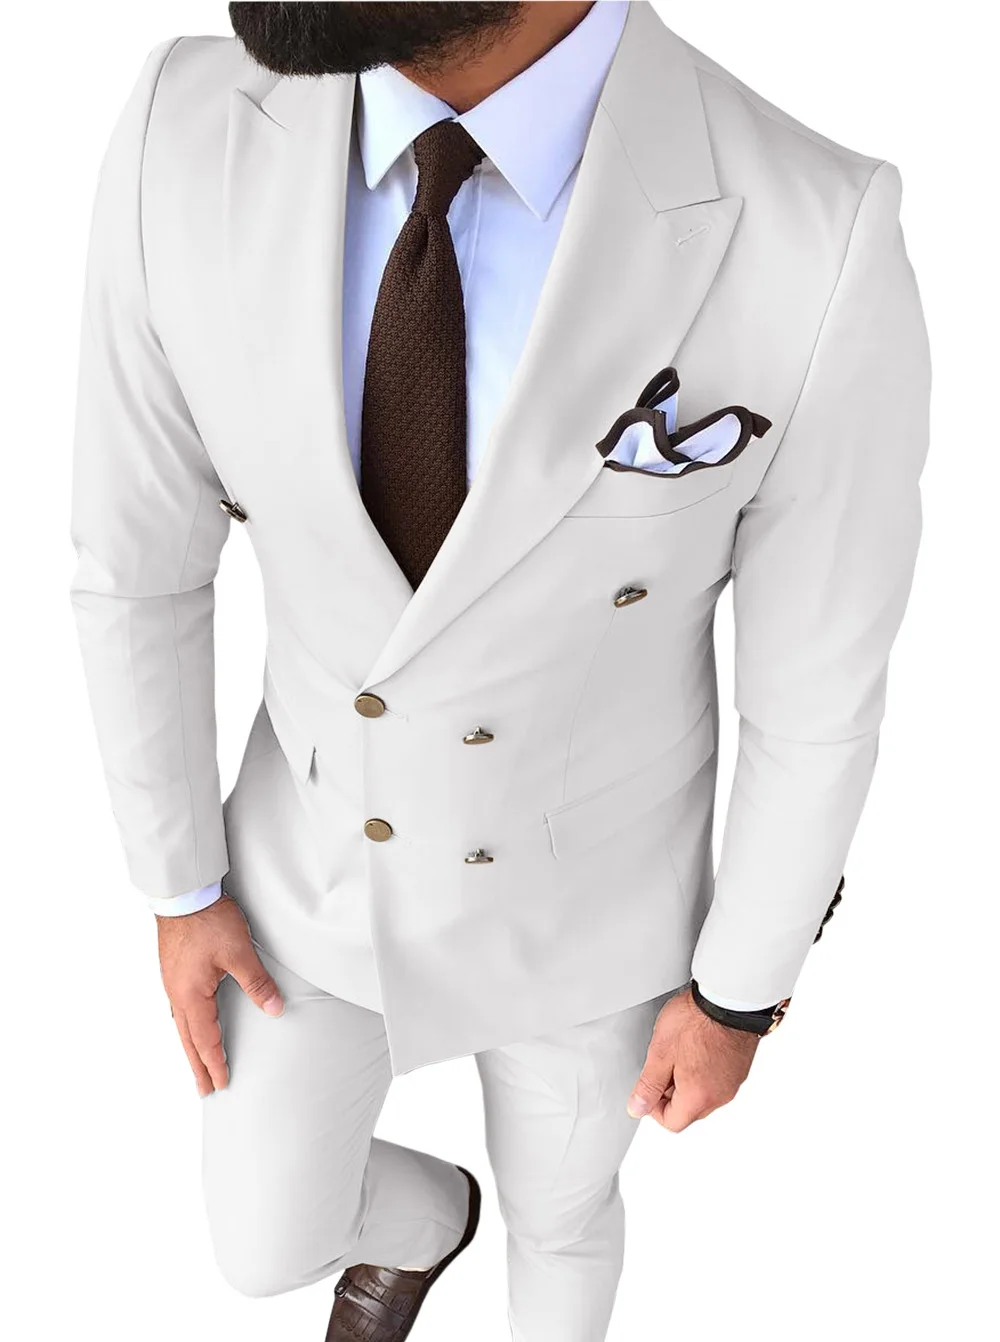 Мужской костюм, приталенный, бежевый, 2 предмета, с отворотом, v-образный вырез, элегантный смокинг для свадебных женихов, мужские костюмы, мужские(пиджак+ брюки